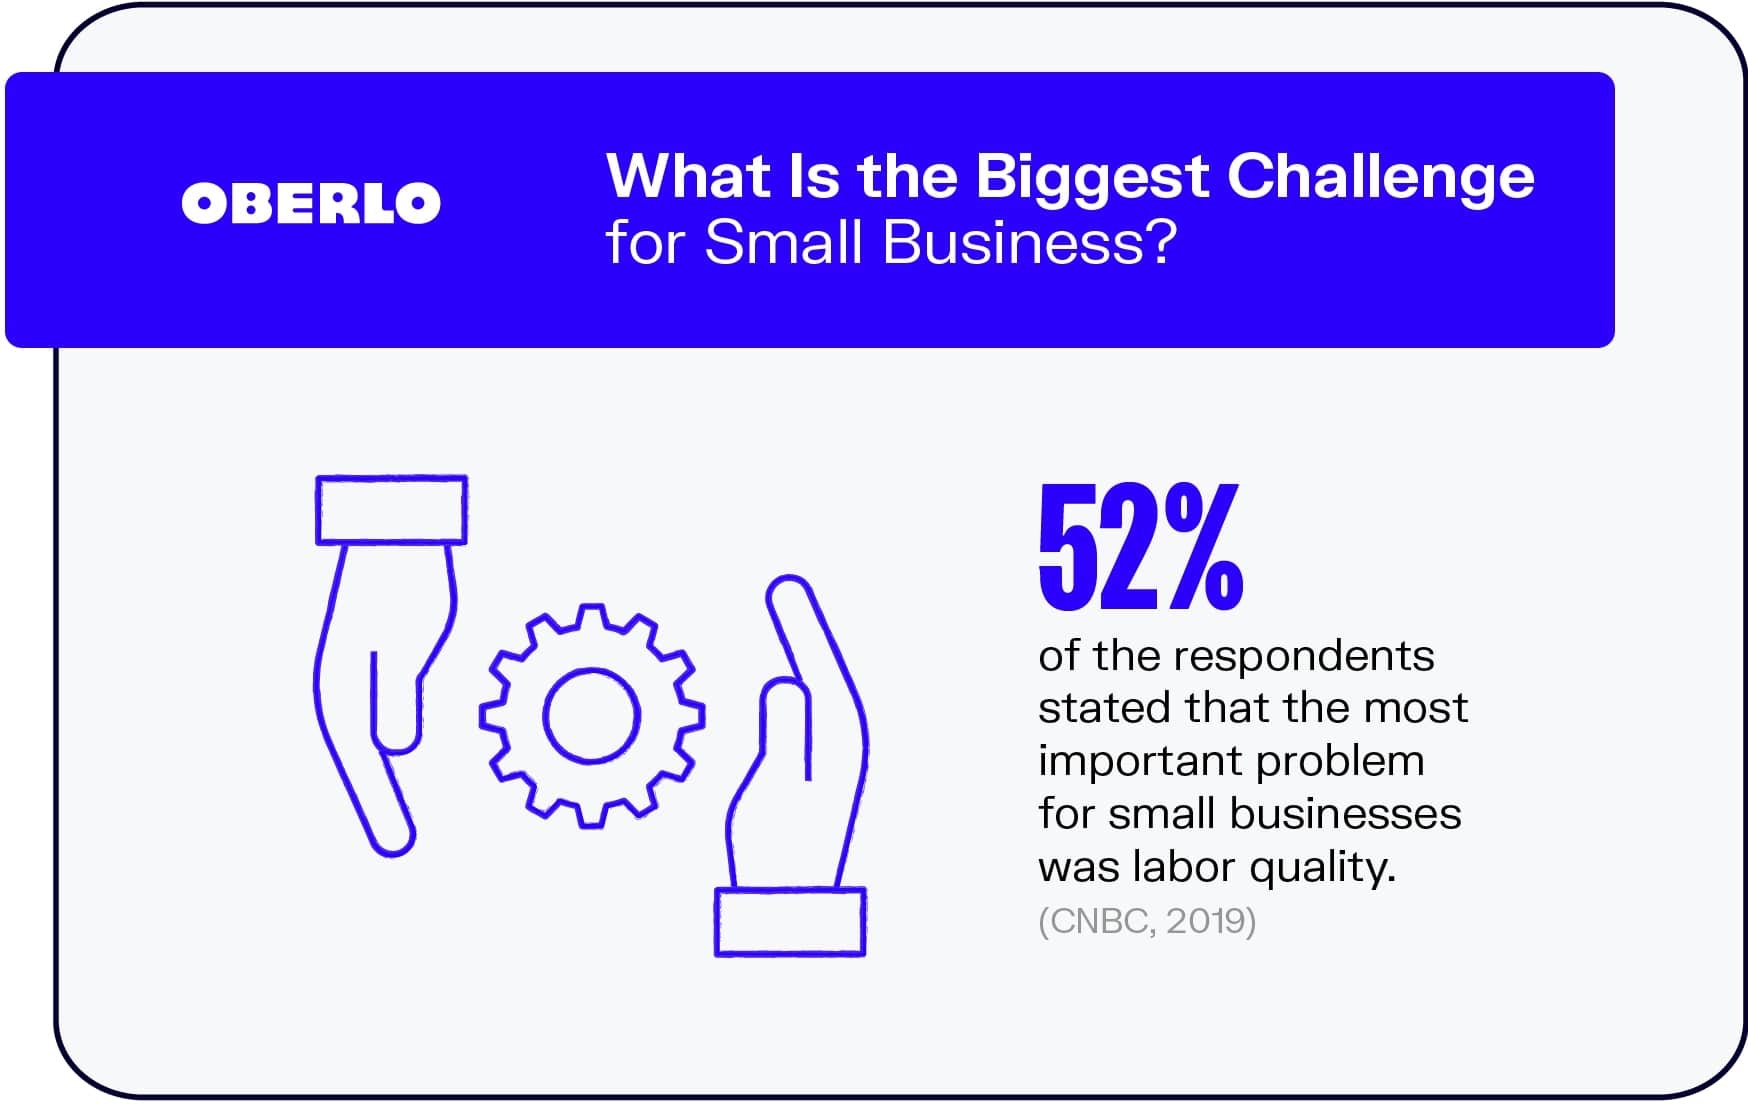 小企业面临的最大挑战是什么?